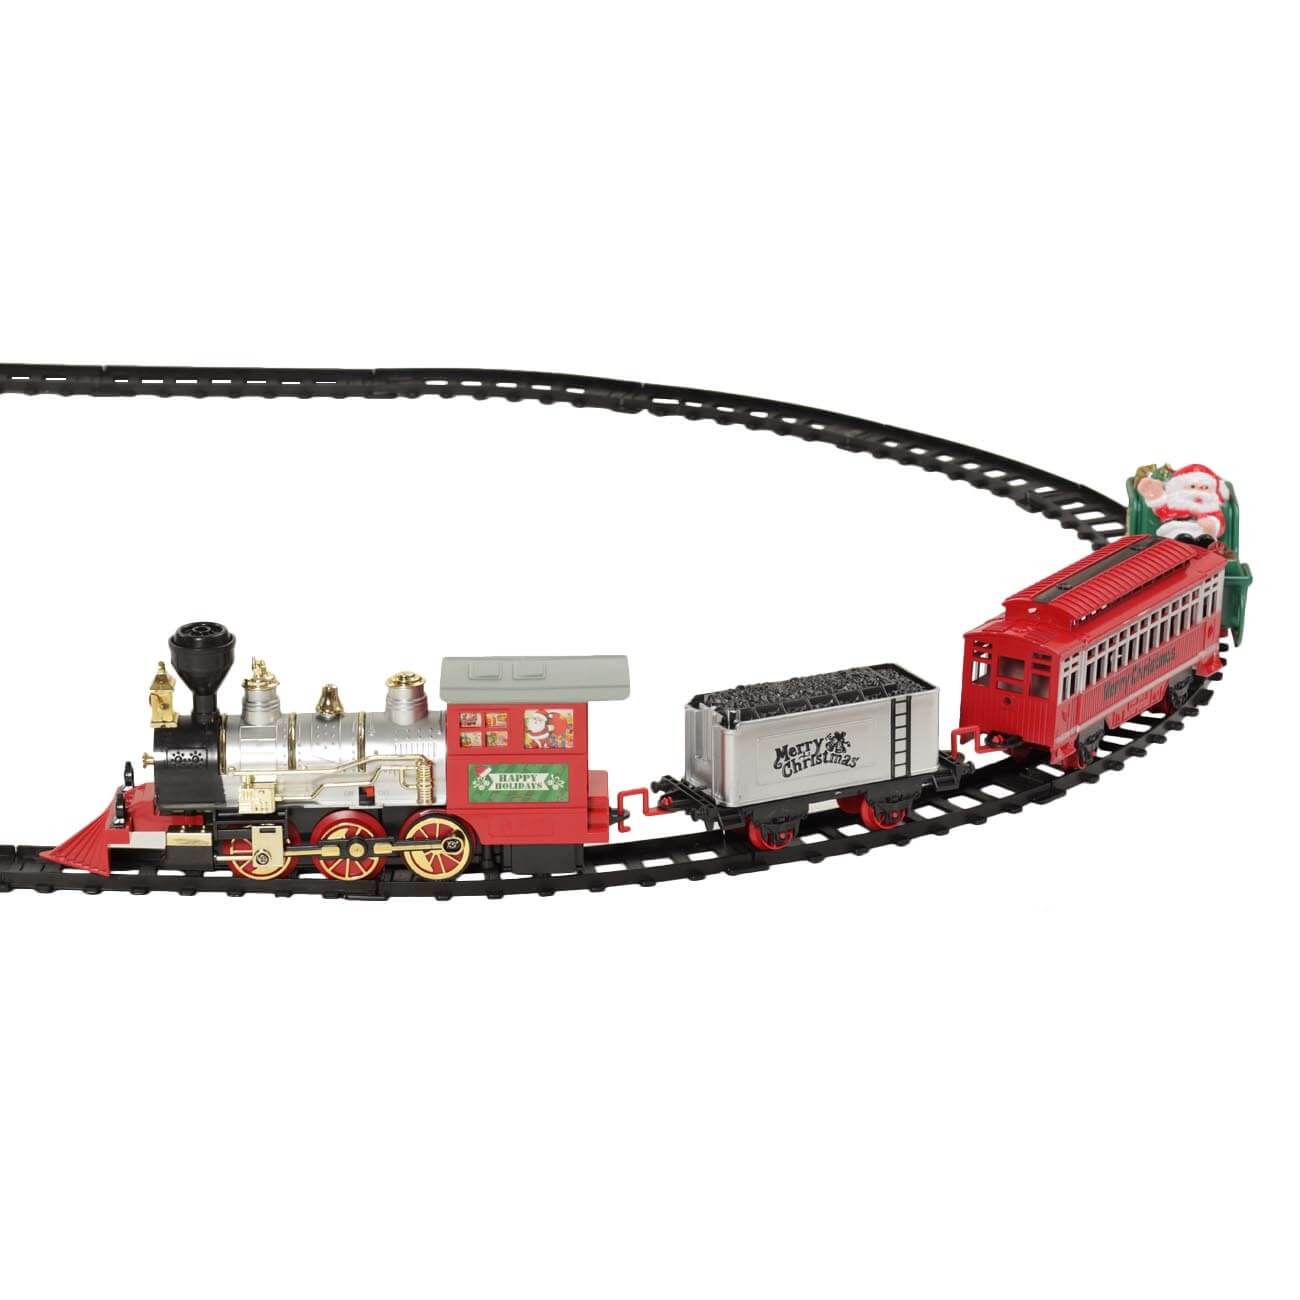 Железная дорога игрушечная, S, музыкальная, с подсветкой/дымом, пластик, Game rail железная логика лучшие игры с роботами